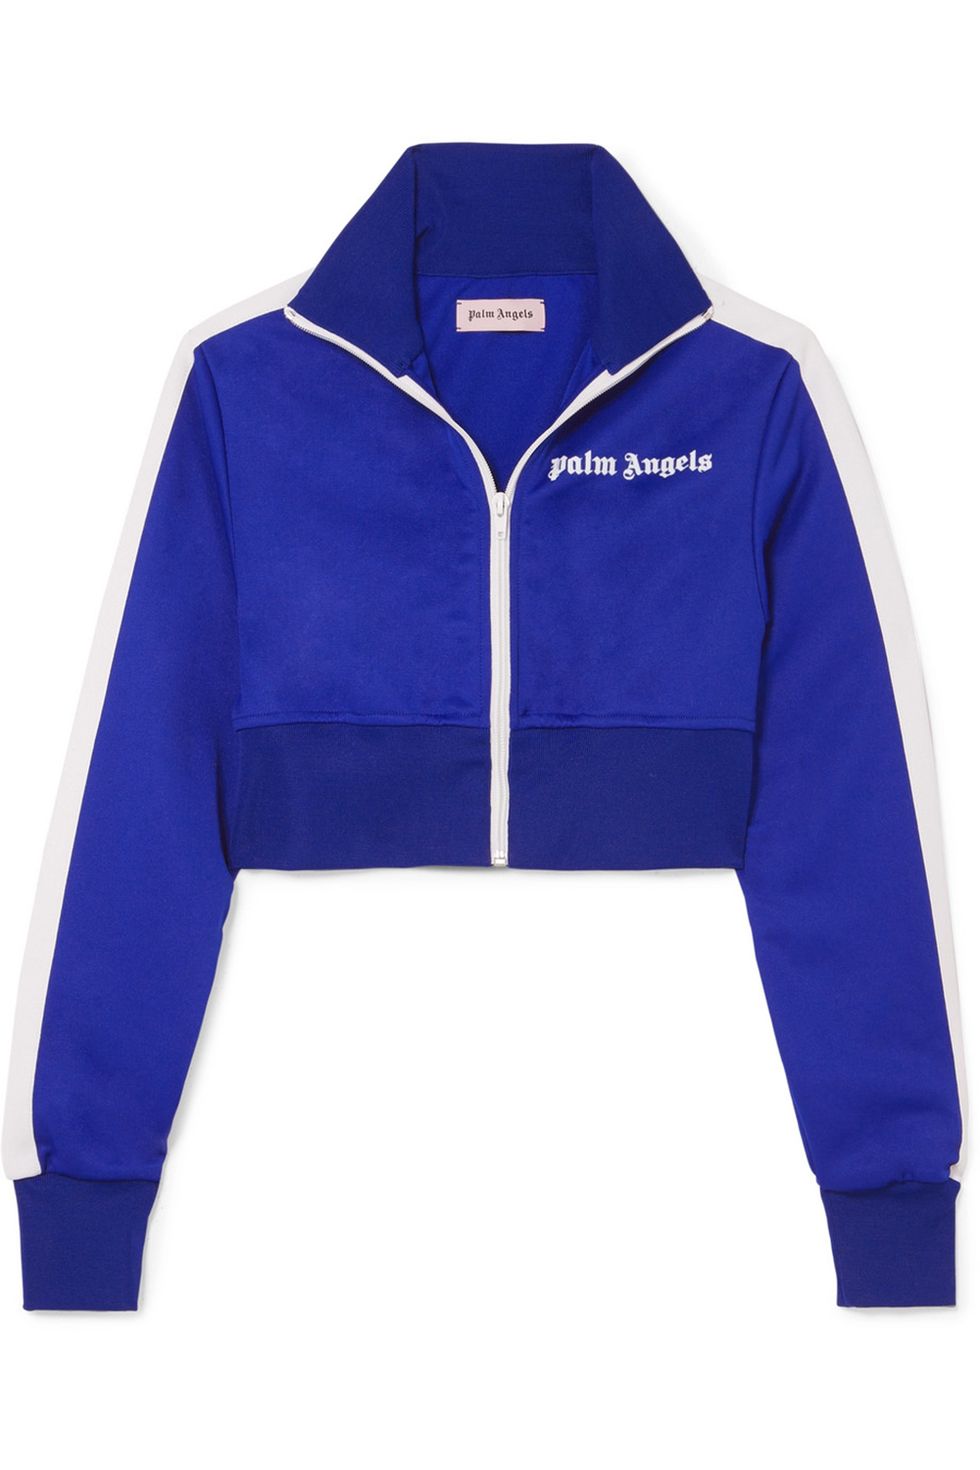 Cobalt blue, Clothing, Jacket, Blue, Sleeve, Outerwear, Electric blue, Polar fleece, Zipper, Hood, 